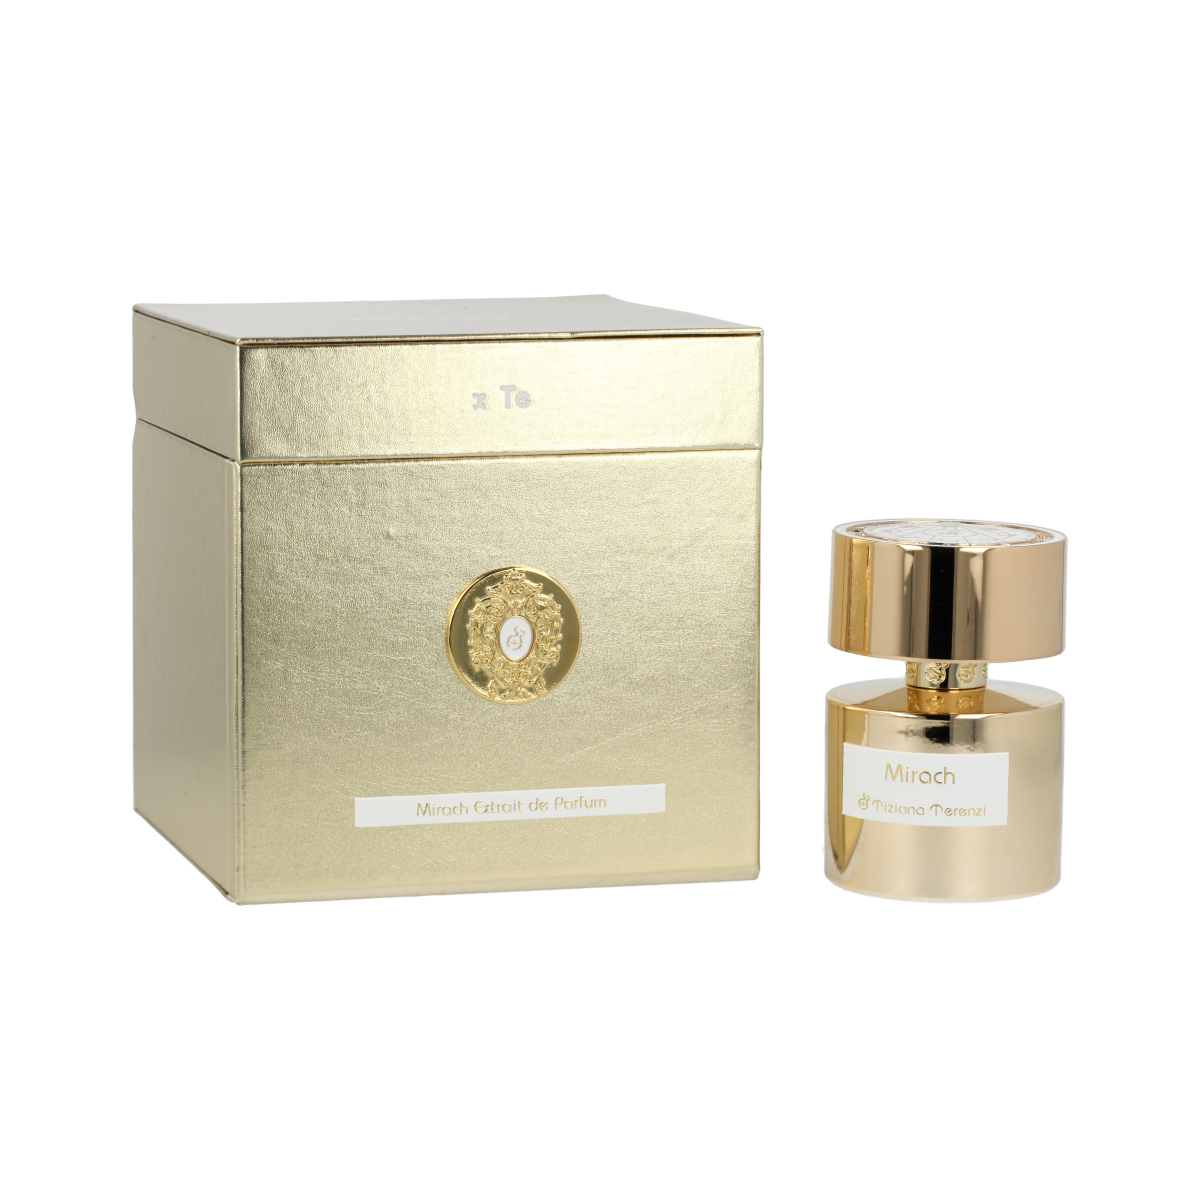 Tiziana Terenzi Mirach 5 ml NIŠINIAI kvepalų mėginukas (atomaizeris) Unisex Parfum